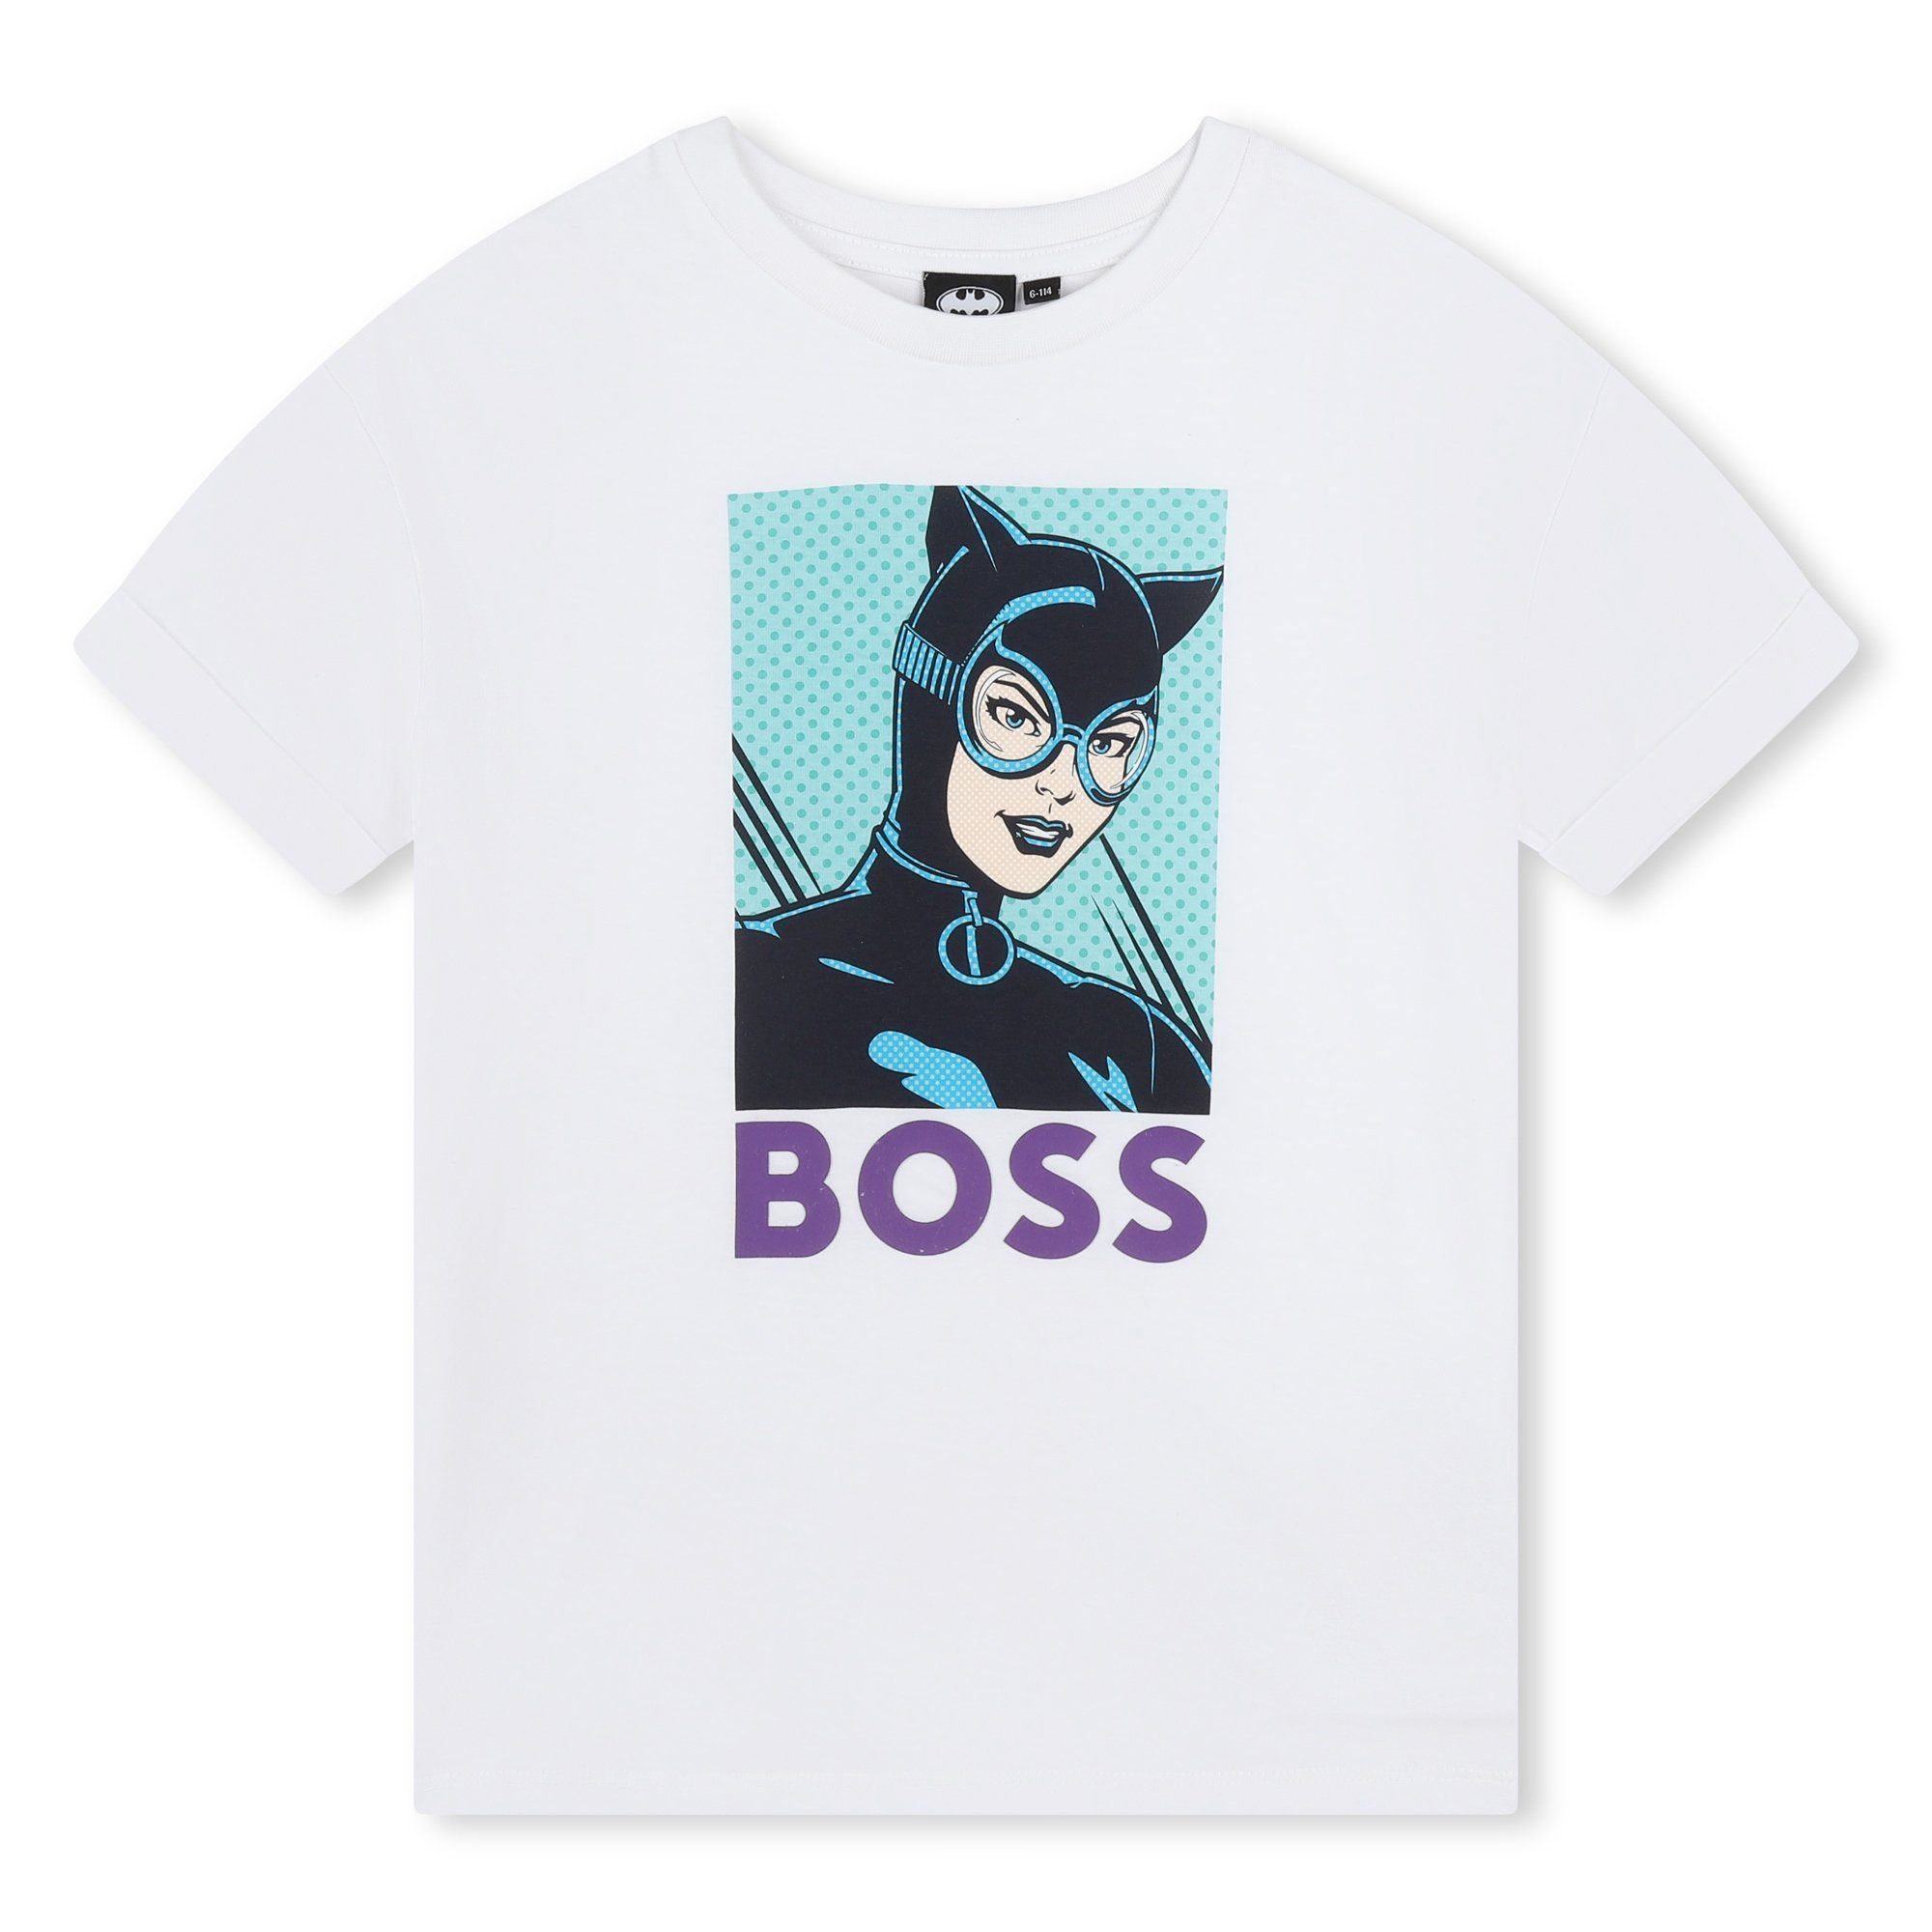 Vorschlag BOSS Print-Shirt Kidswear Bros - Catwoman Boss x T-Shirt Warner